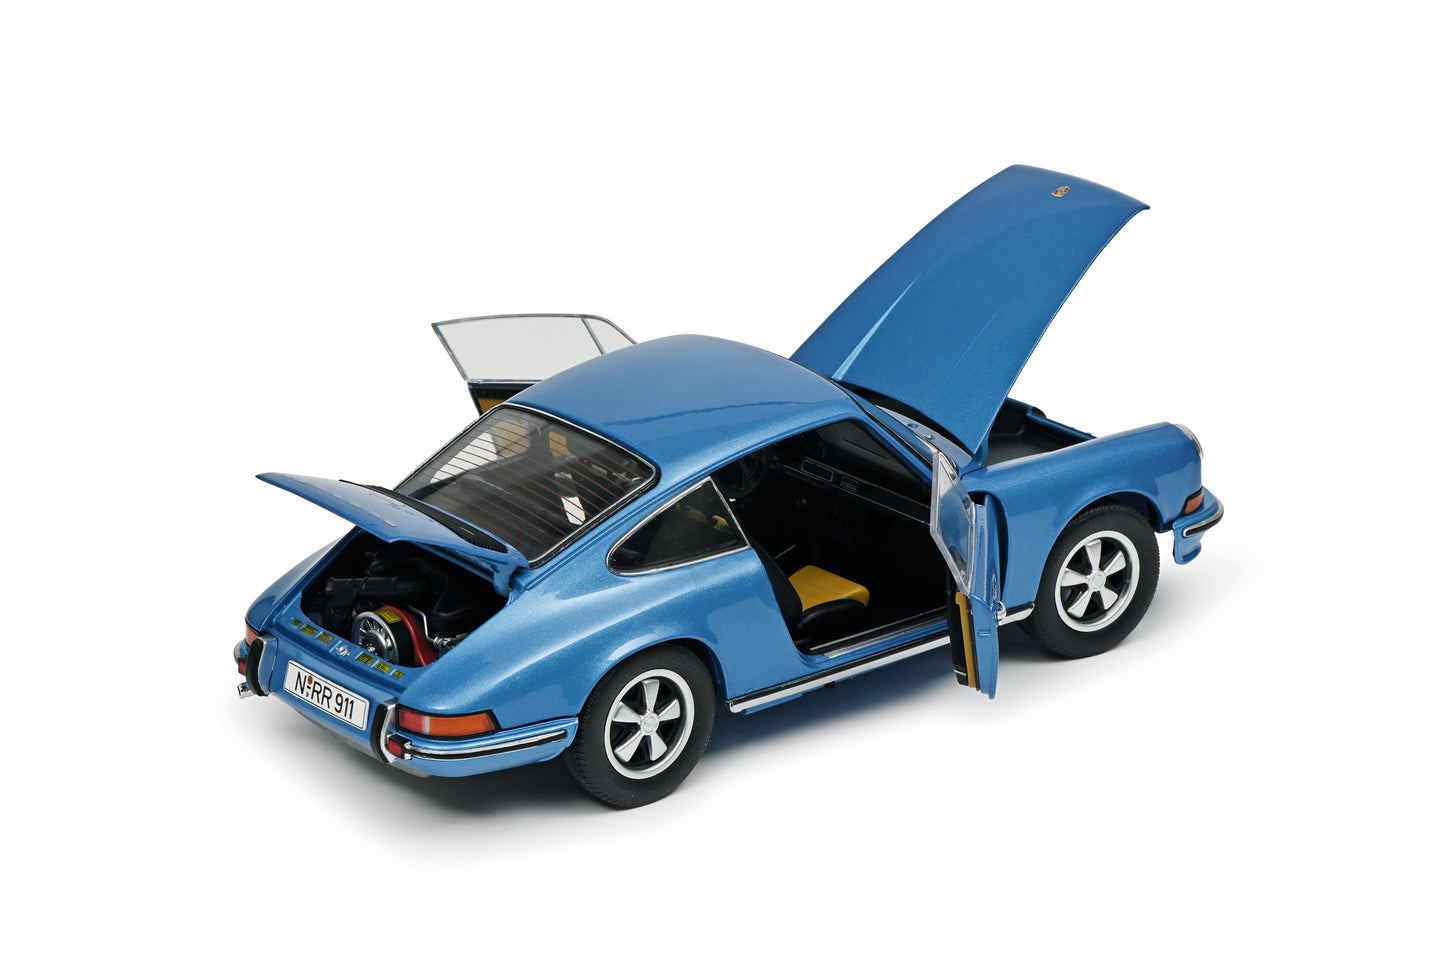 Schuco 1:18 Porsche 911 S Coupe Blue 450039100